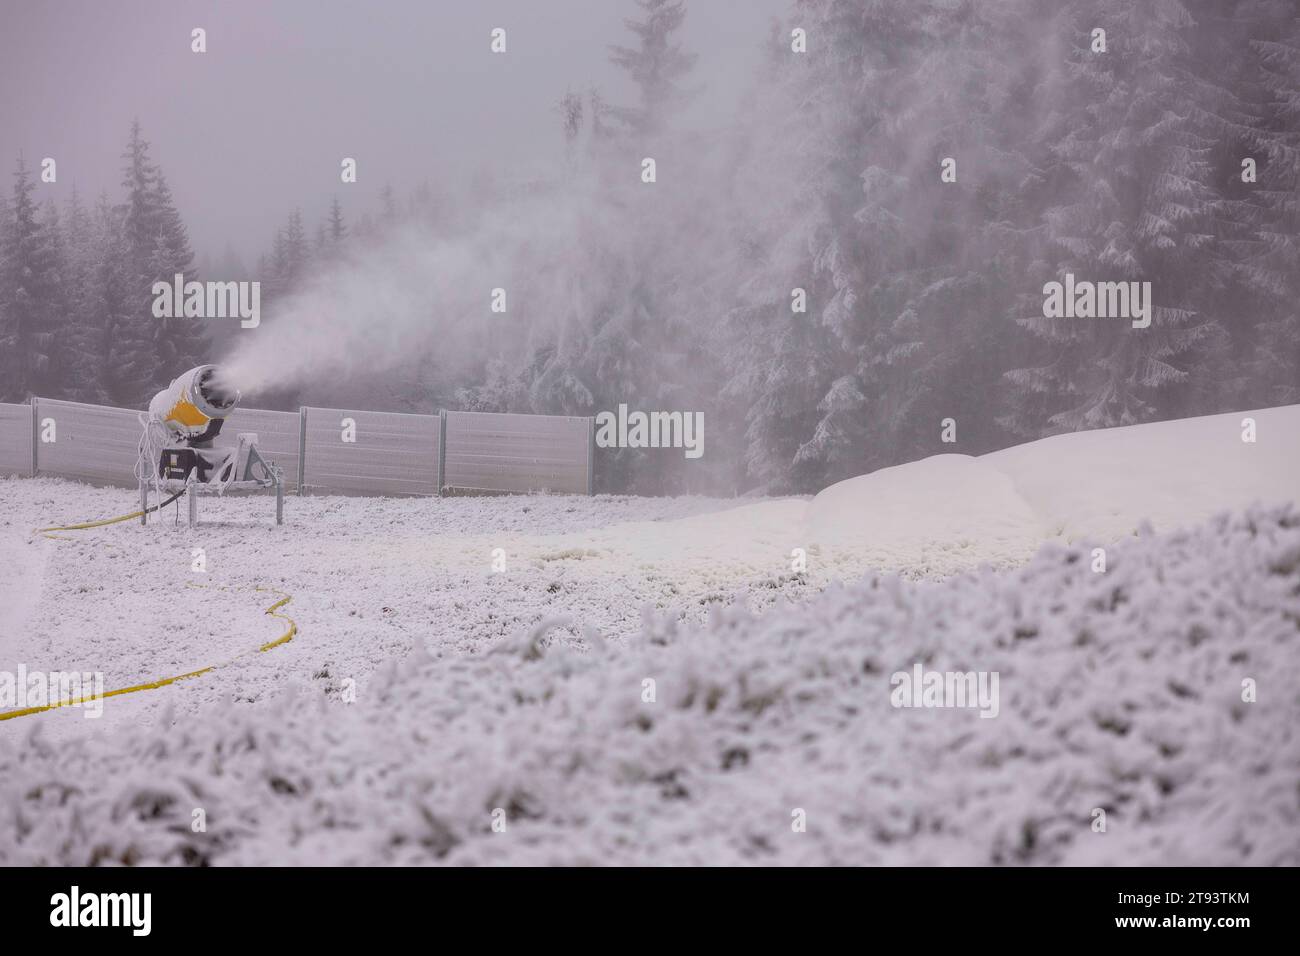 Wasser marsch am Skigebiet Keilberg laufen en el juego Dienstagabend die Schneekanonen heiß. Es principiante en el juego Vorbereitungen auf die Skisaison. IM Gegensatz zum Skigebiet en Oberwiesenthal werden die Hänge kräftig beschneit. Auf allen Pisten laufen die Schneekanonen. Das Betriebspersonal ist dabei die Schneekanonen immer wieder neu auszurichten. Dabei stehen die chancen auf einen frühen Saisonbeginn nicht schlecht. Am Wochenende kommen bis zu 30 cm Neuschnee hinzu. Keilberg Bayern Deutschland Crédito: Imago/Alamy Live News Foto de stock